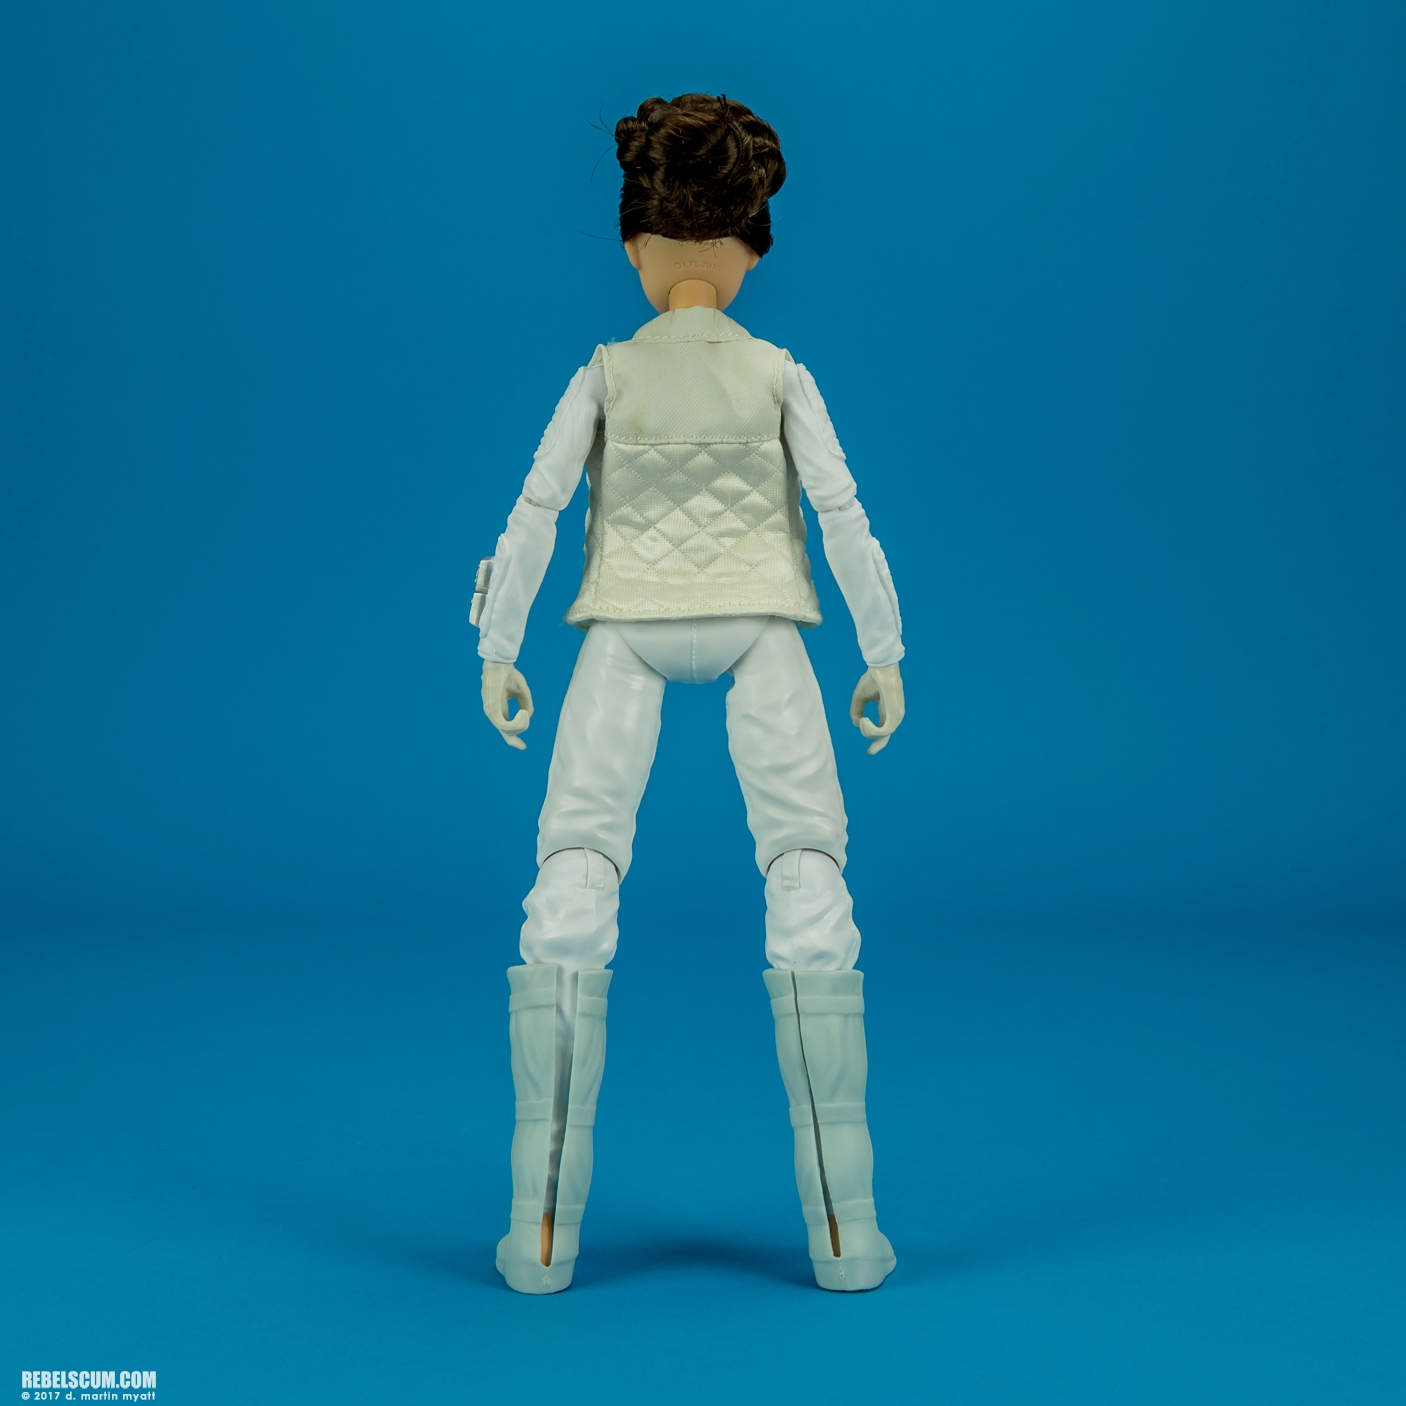 Forces-Of-Destiny-Princess-Leia-Organa-R2-D2-004.jpg